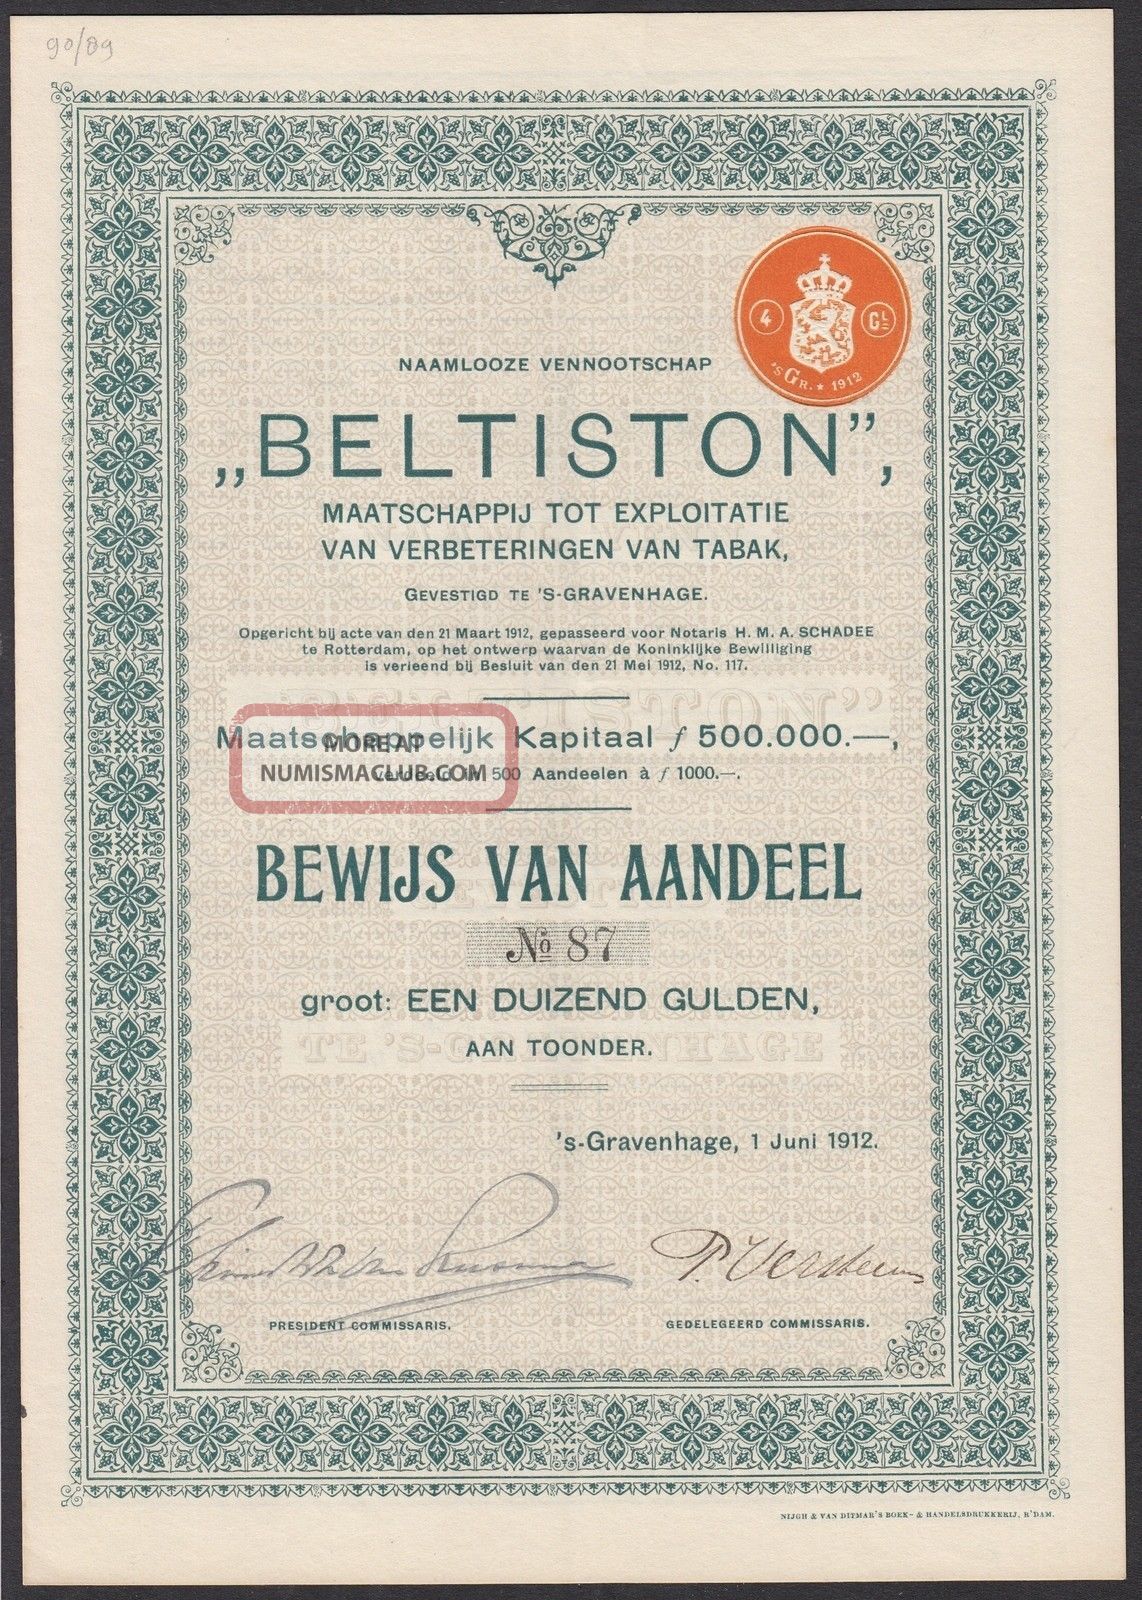 Netherlands 1912 Bond With Coupons Beltiston Tabak Expl.  St - Gravenhage.  R4020 World photo